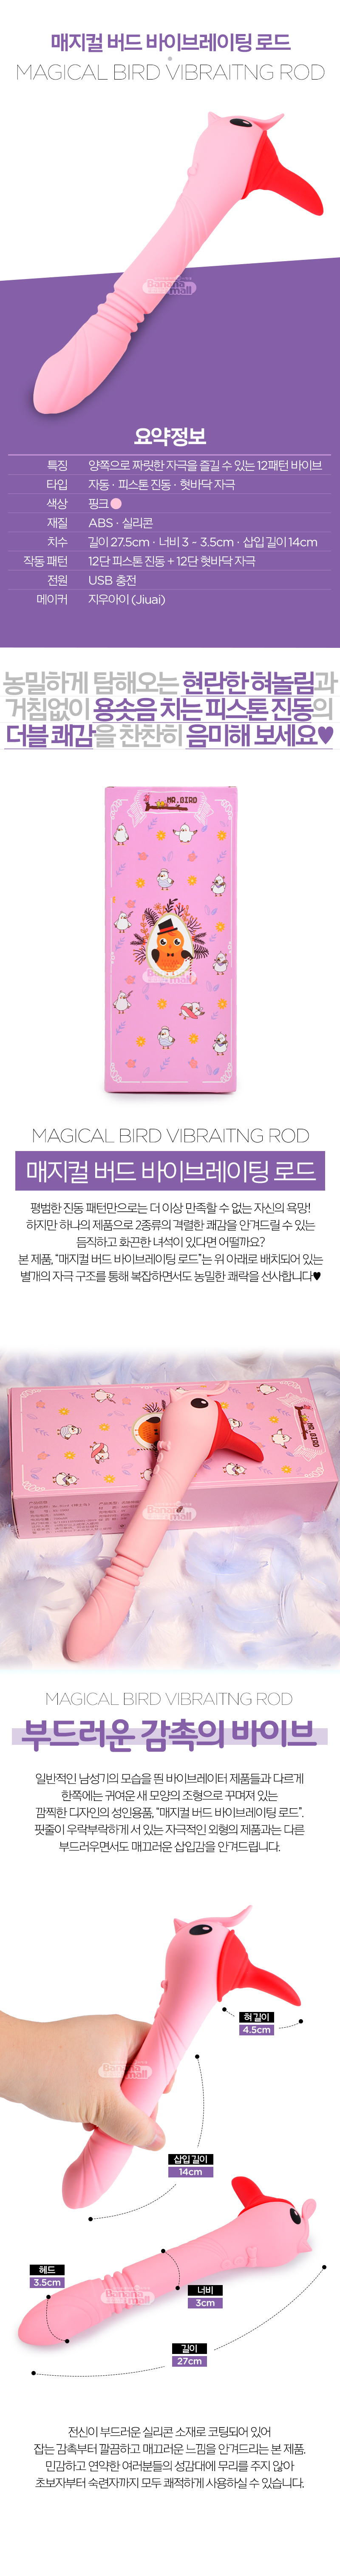 [12단 피스톤 진동+12단 혀자극] 매지컬 버드 바이브레이팅 로드(Magical Bird Vibraitng Rod)